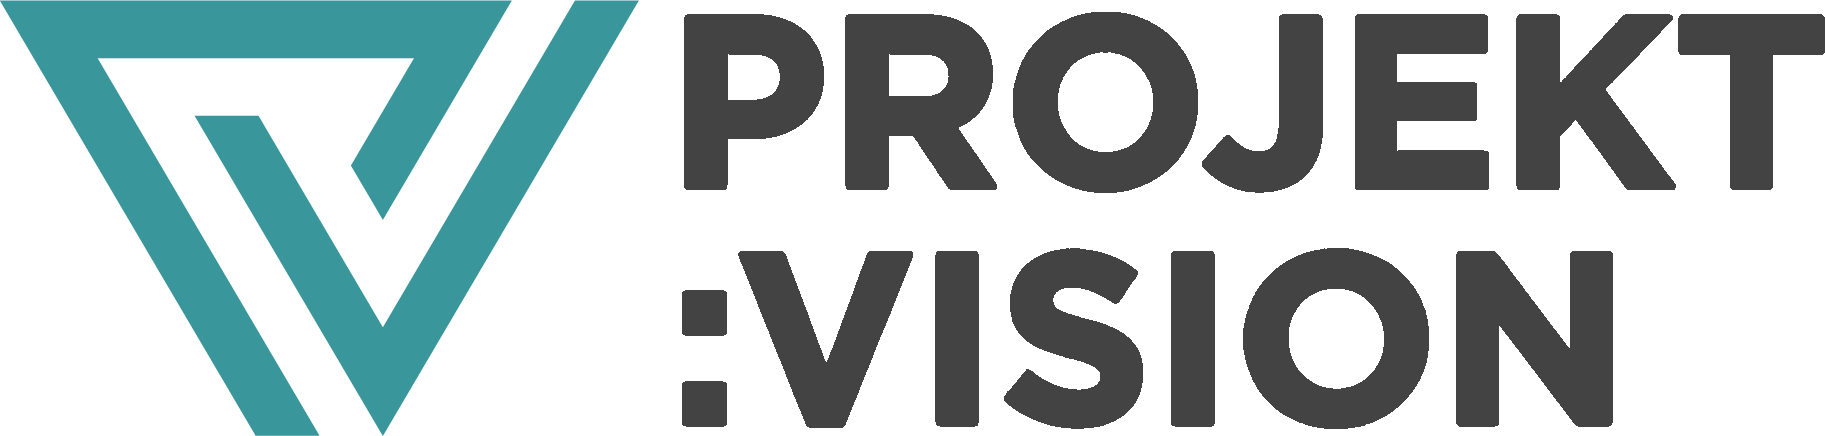 projekt-vision-logo-ver5.png